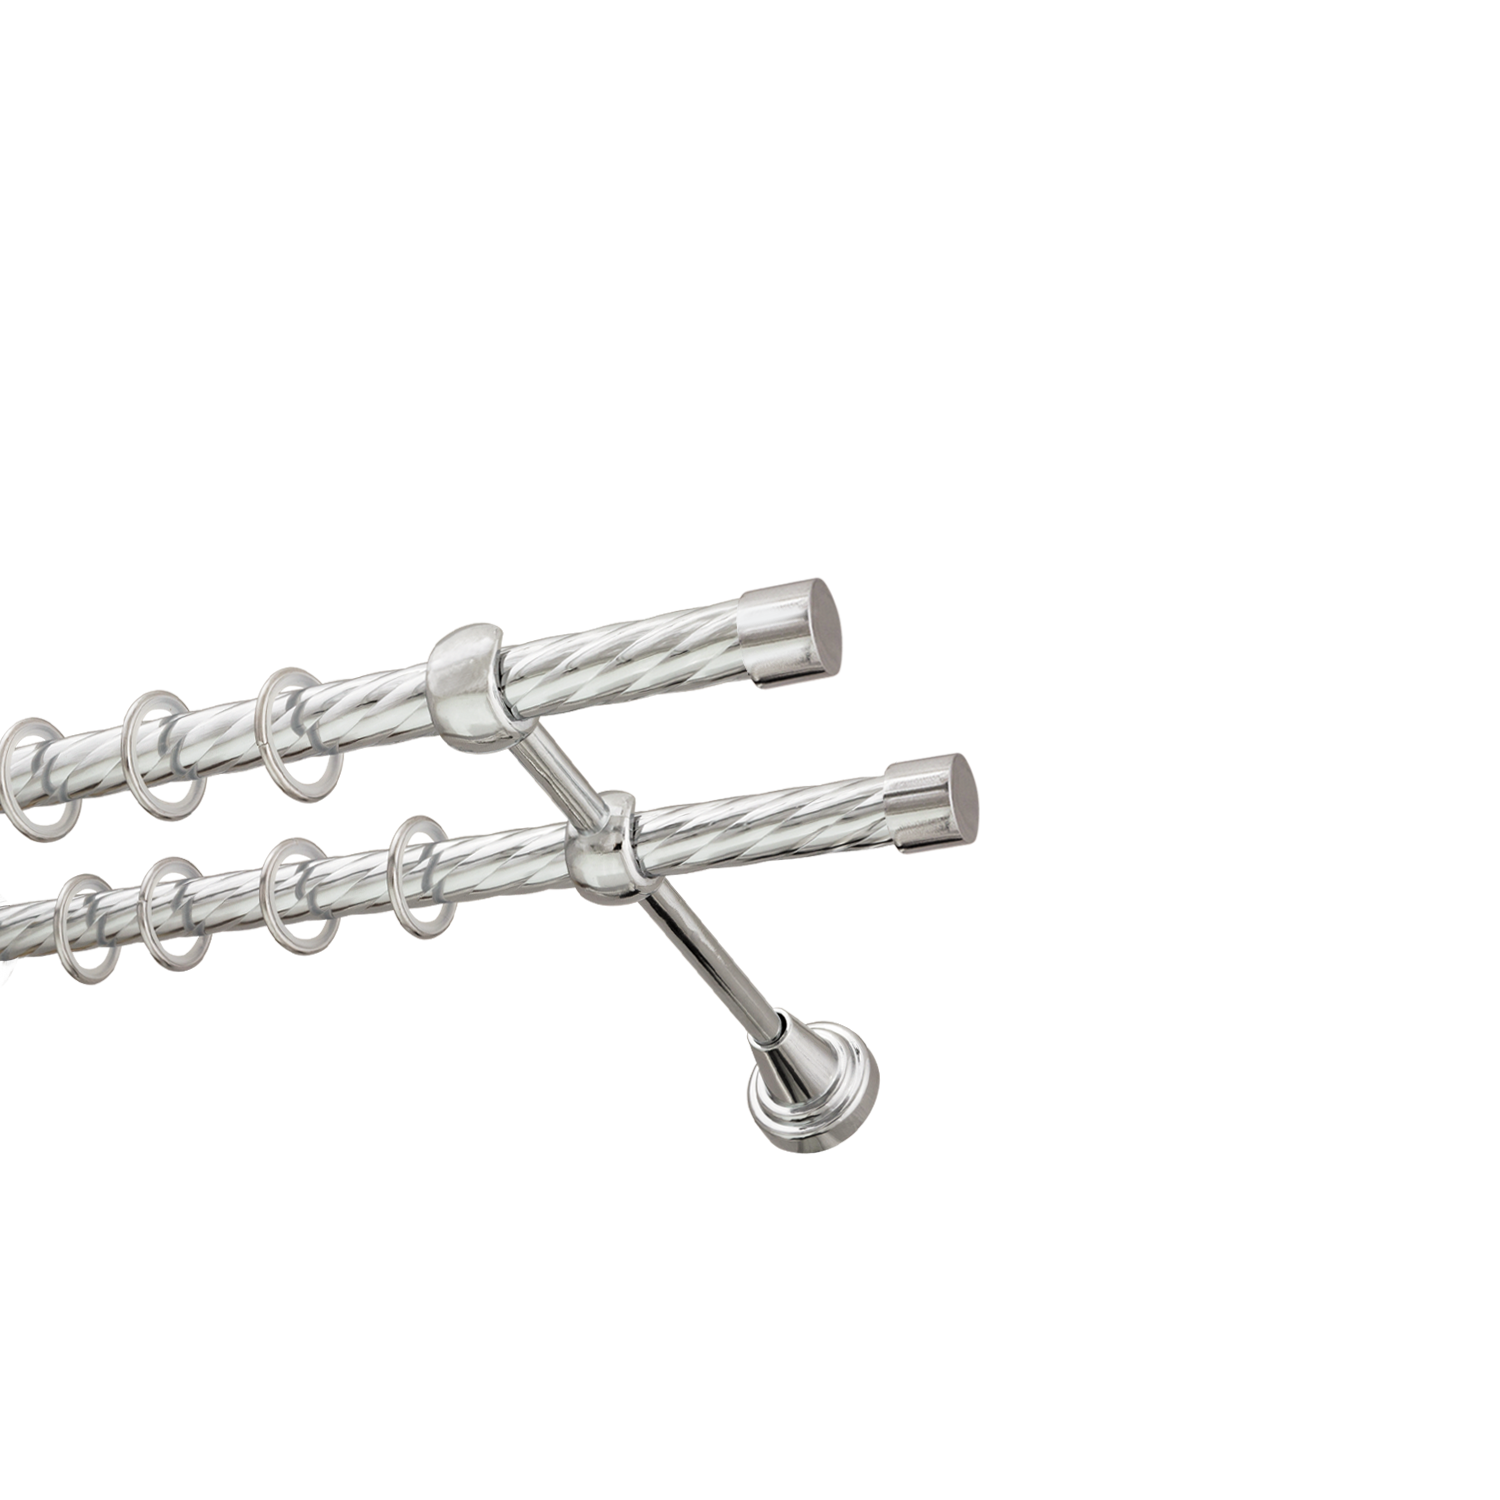 Металлический карниз для штор Заглушка, двухрядный 16/16 мм, серебро, витая штанга, длина 300 см